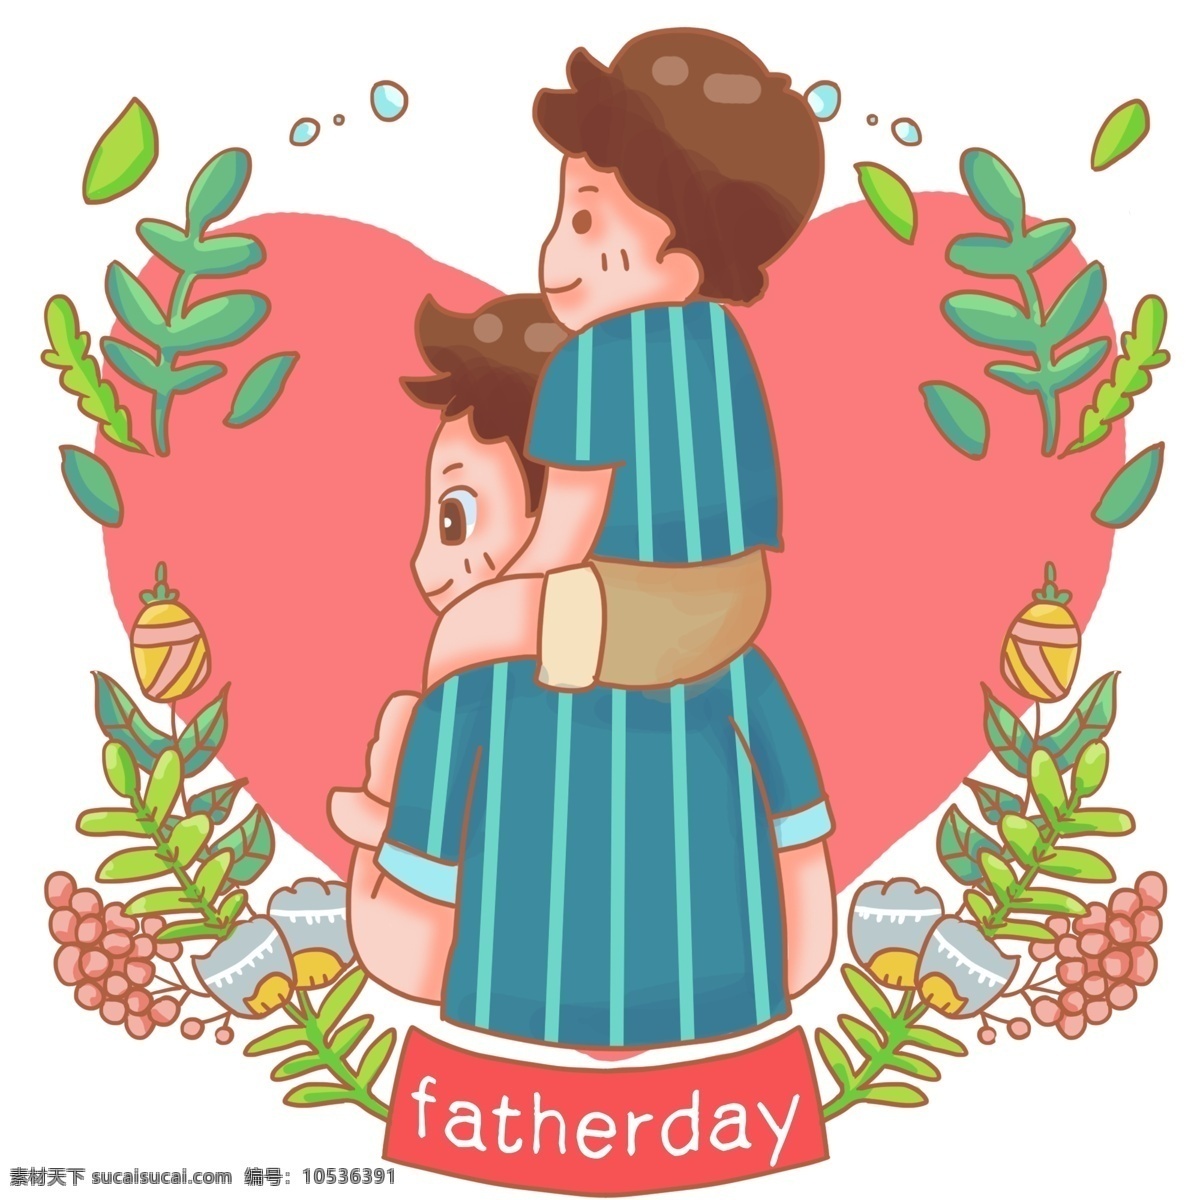 爸爸 一起 背影 绿植 装饰 肩膀 父子 父亲节 父亲 爹 节日 男人 宝宝 6月16日